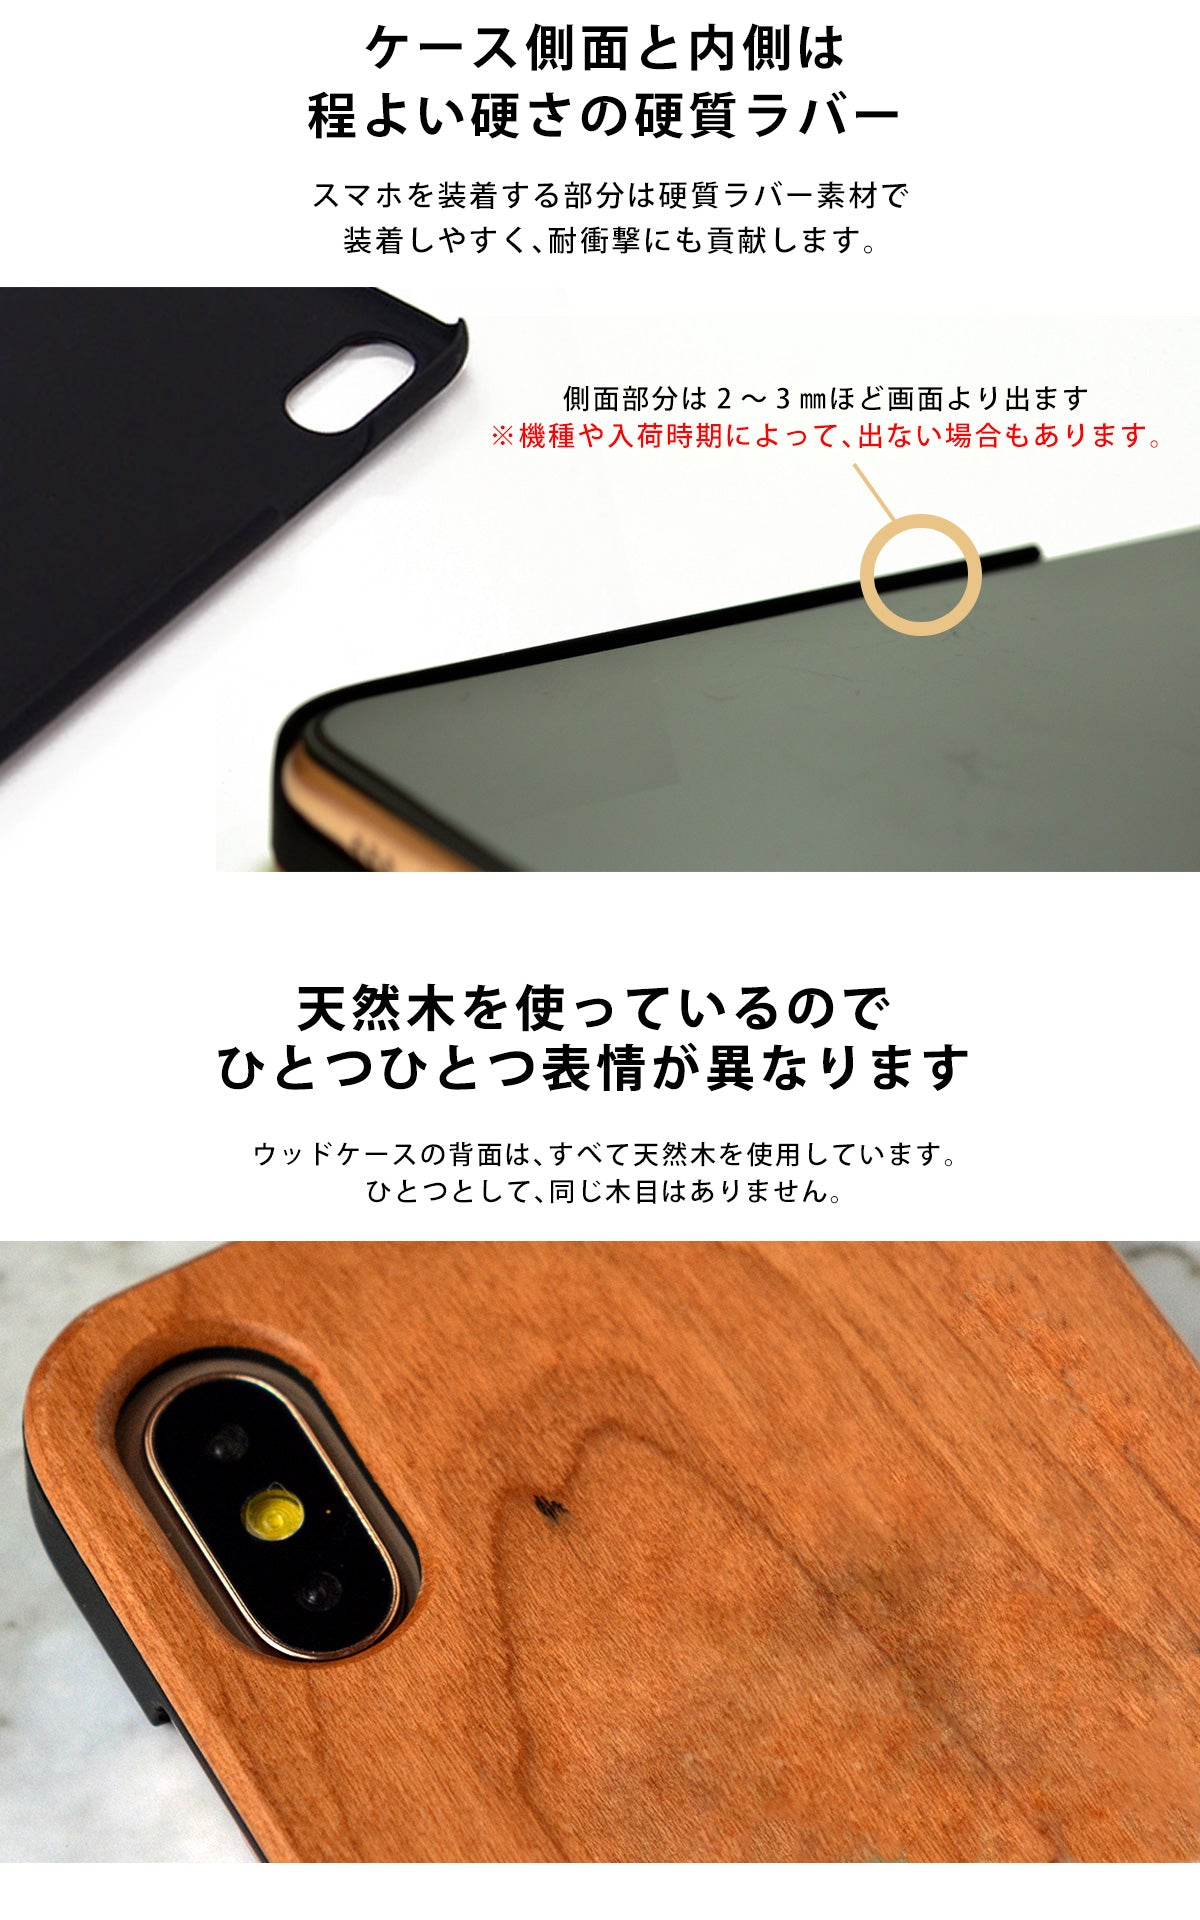 ウッド 木製 竹製 天然木 iPhone Xperia ケース tr1364